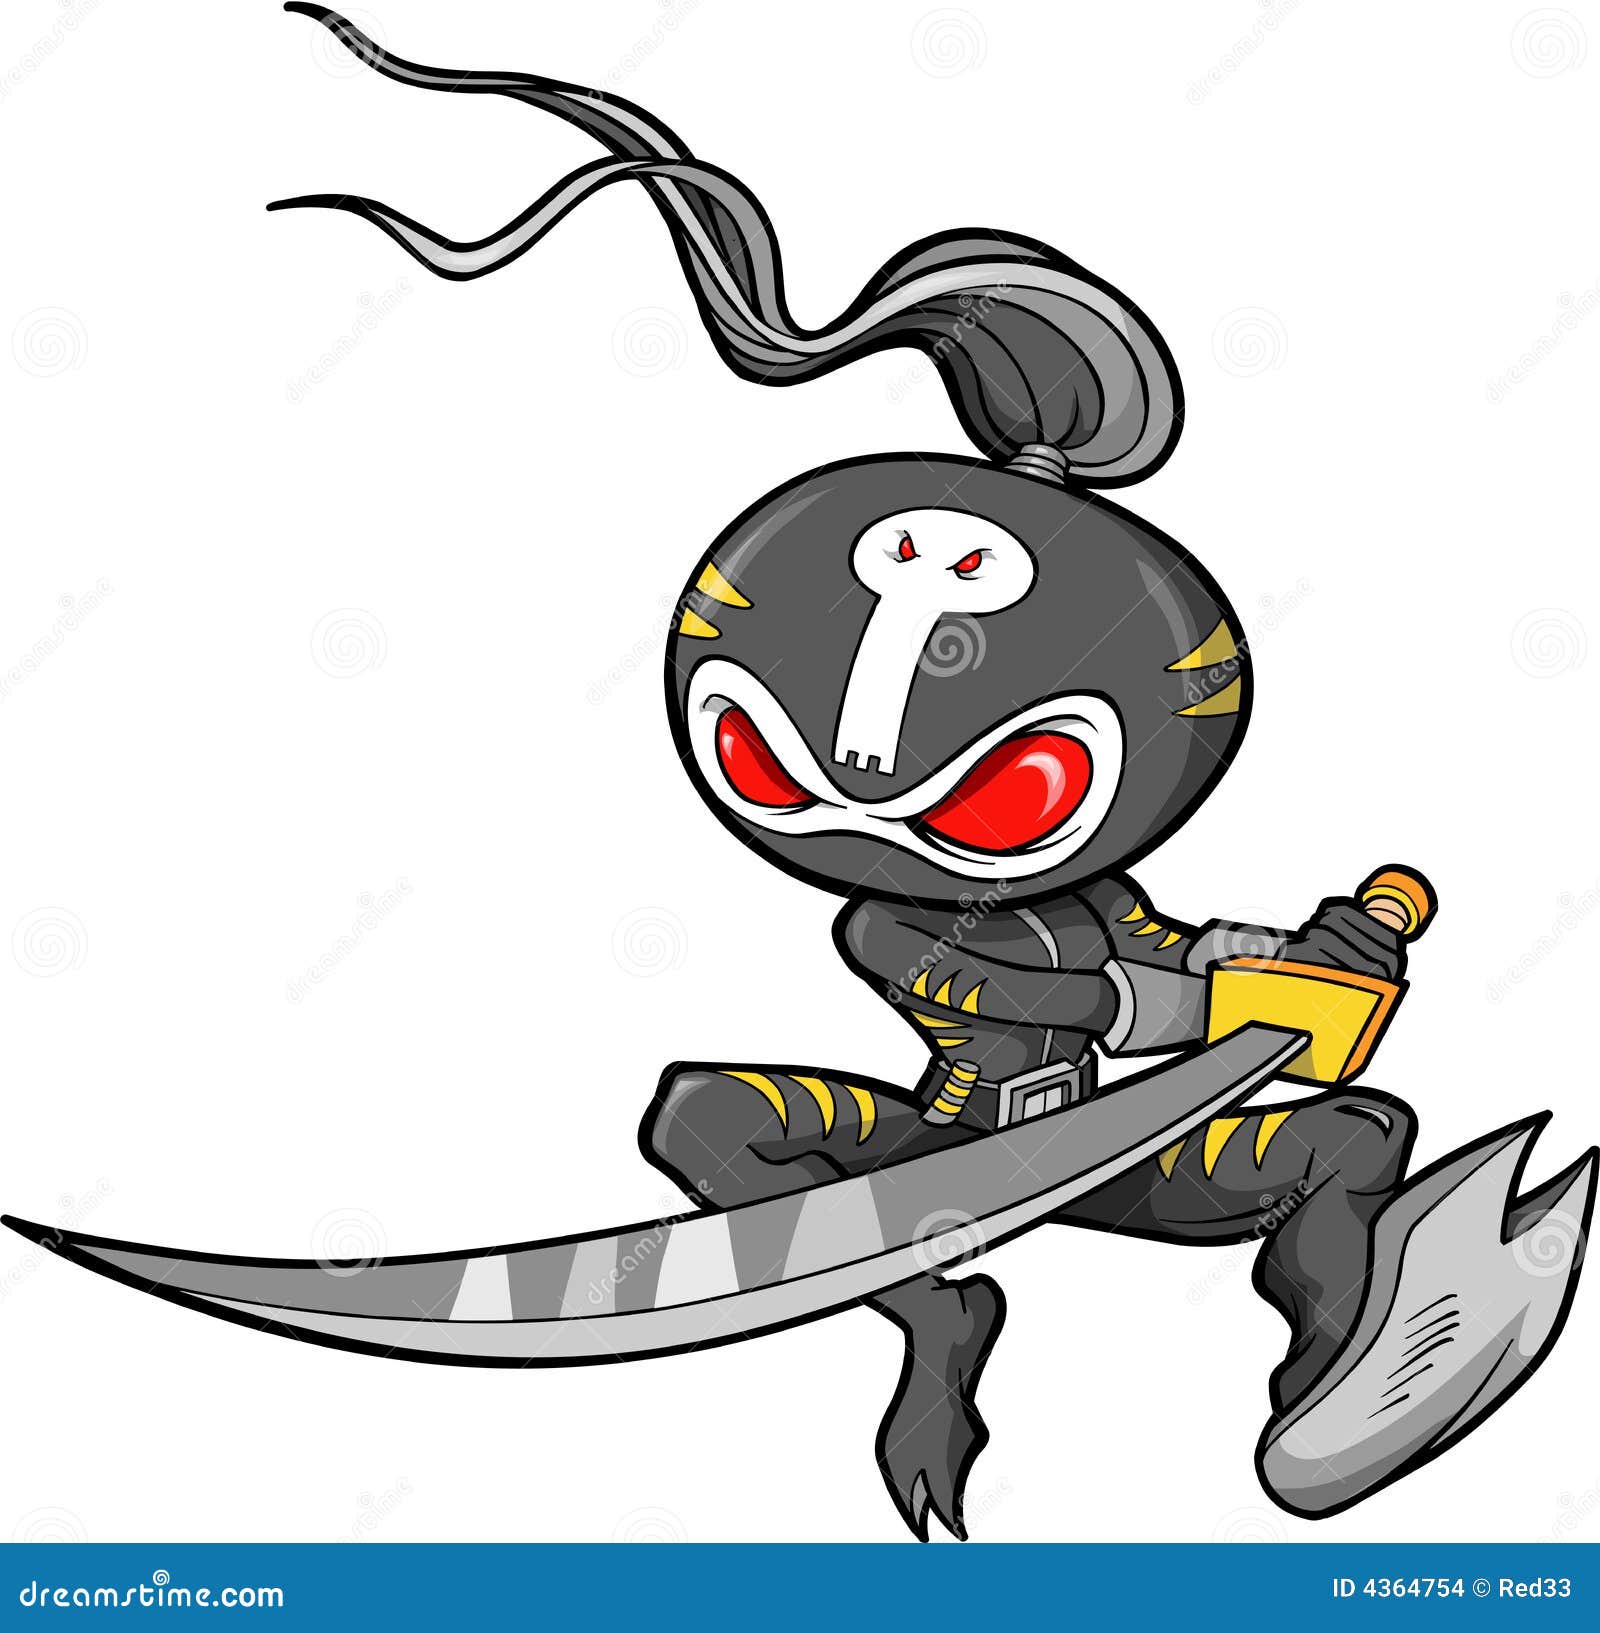 https://thumbs.dreamstime.com/z/ninja-warrior-vector-4364754.jpg